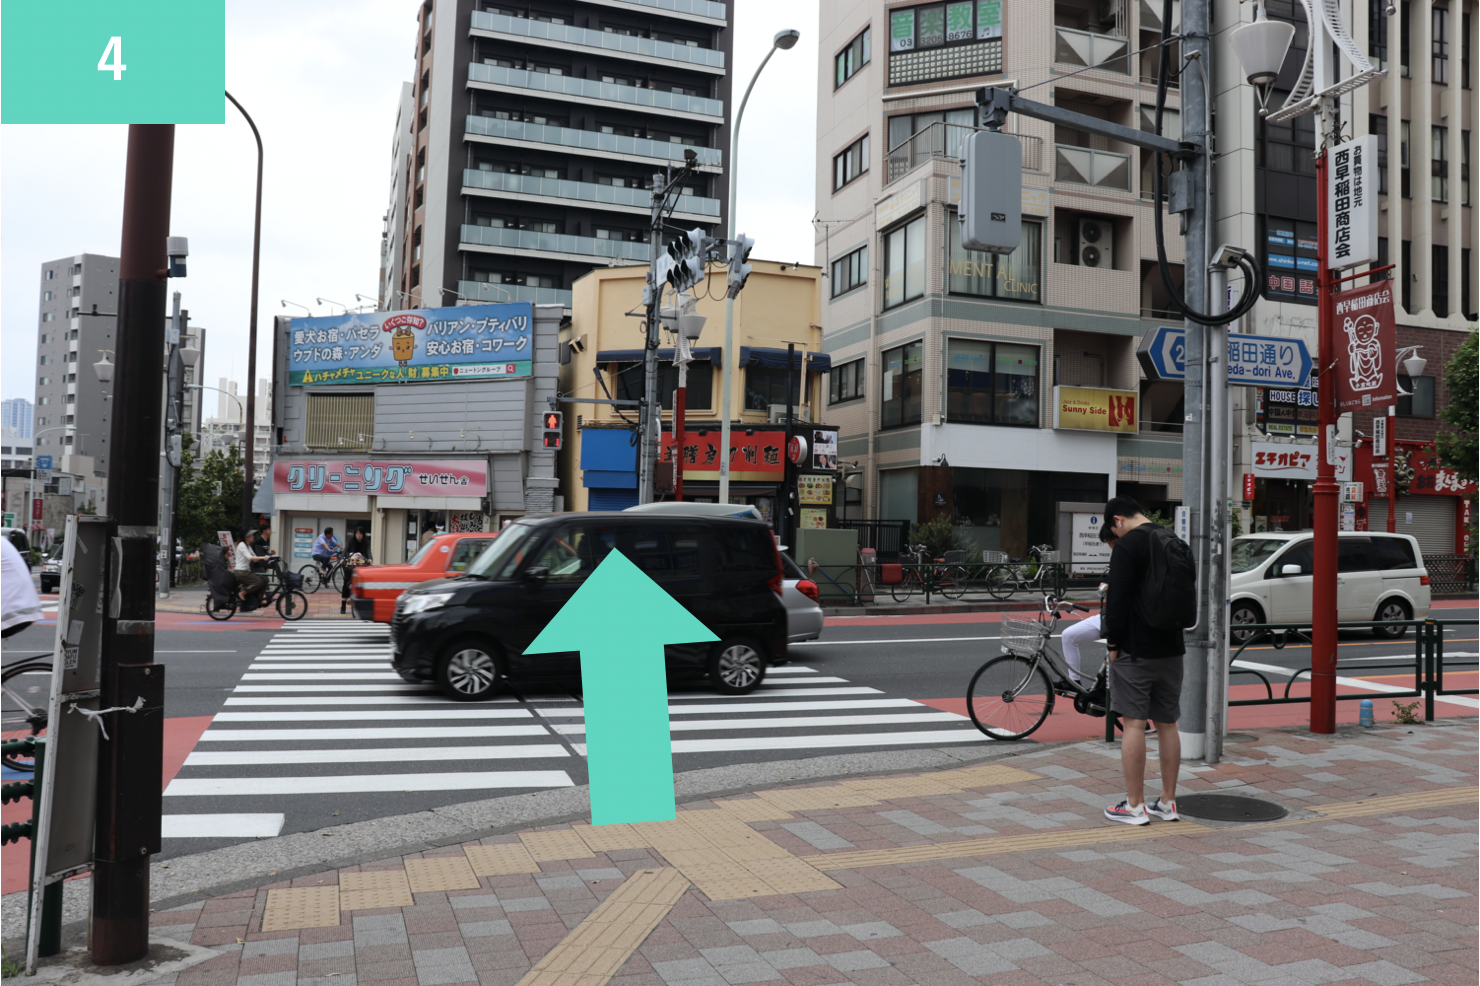 馬場口交差点（早稲田通りとの交差点）の横断歩道をクリーニング屋さん側に渡ります